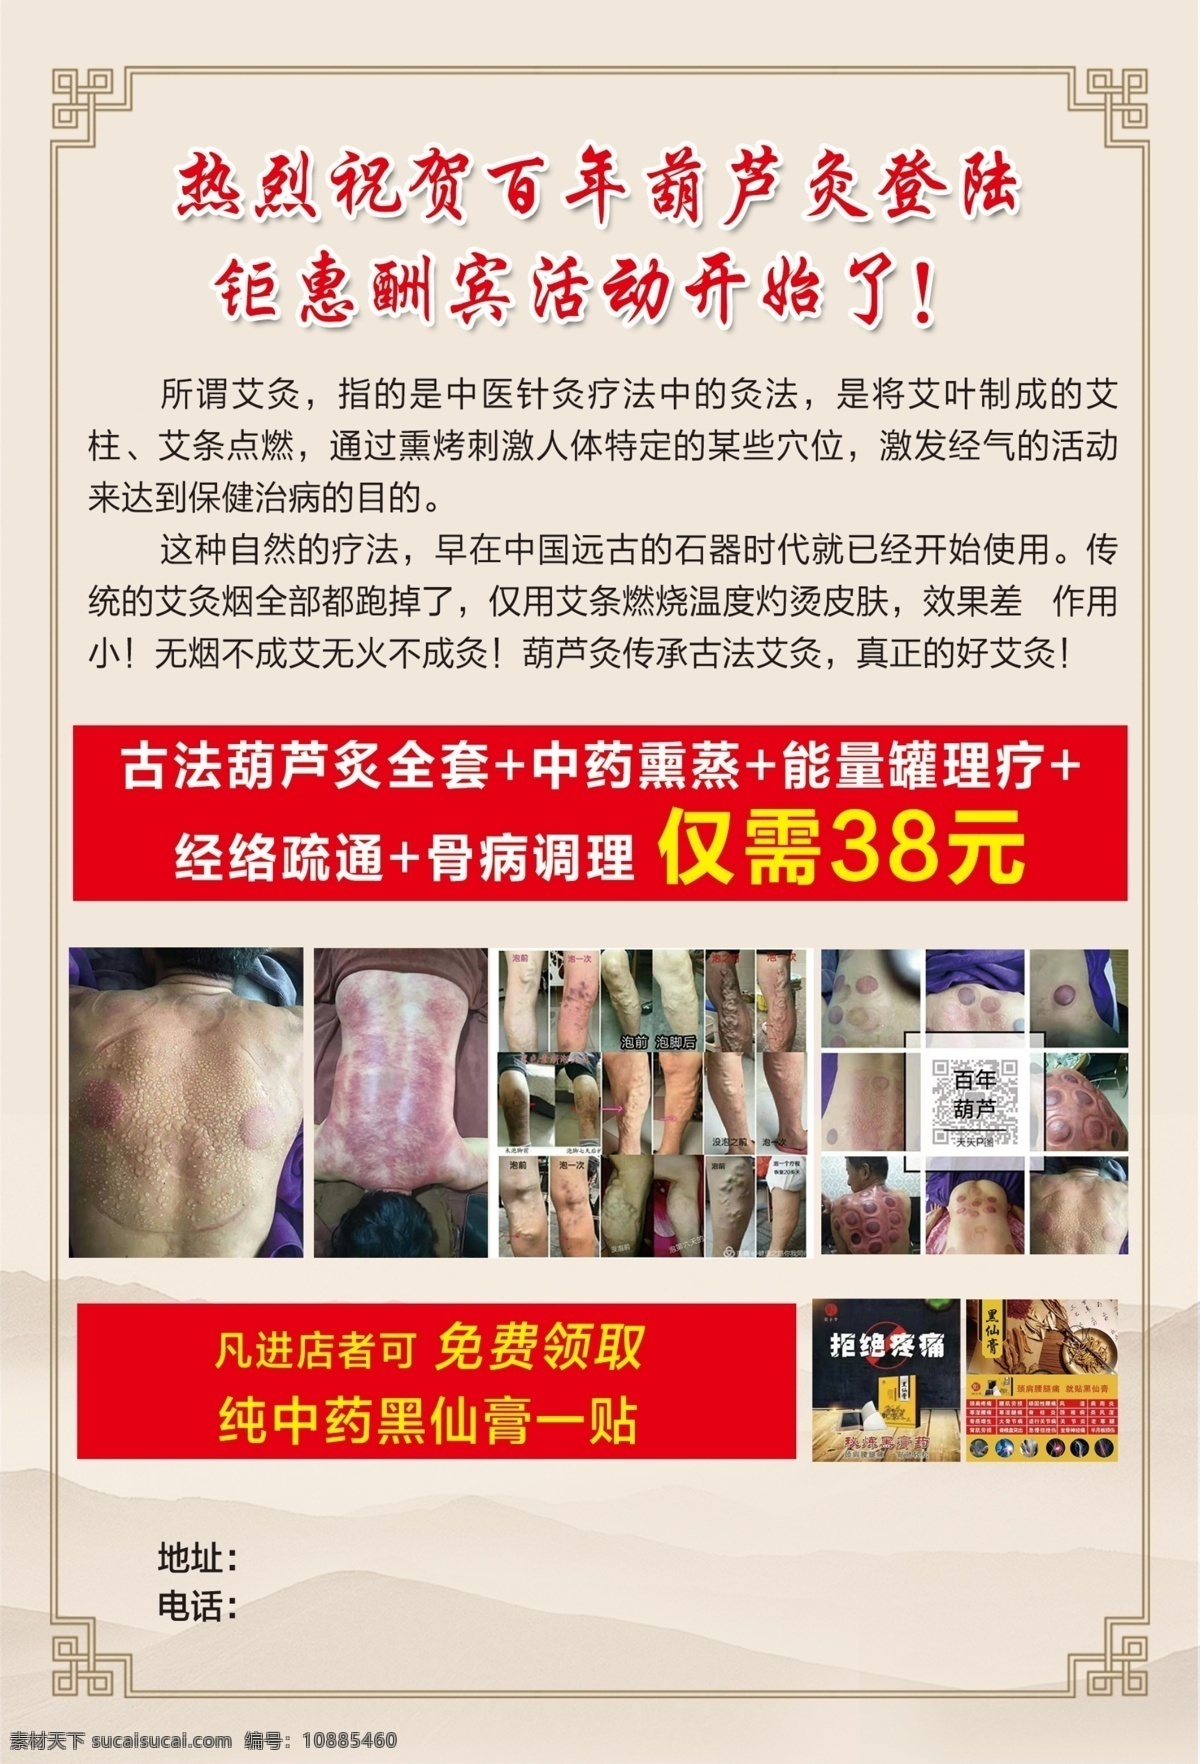 中医单页 中医宣传单 百年葫芦灸 内容 葫芦 针灸